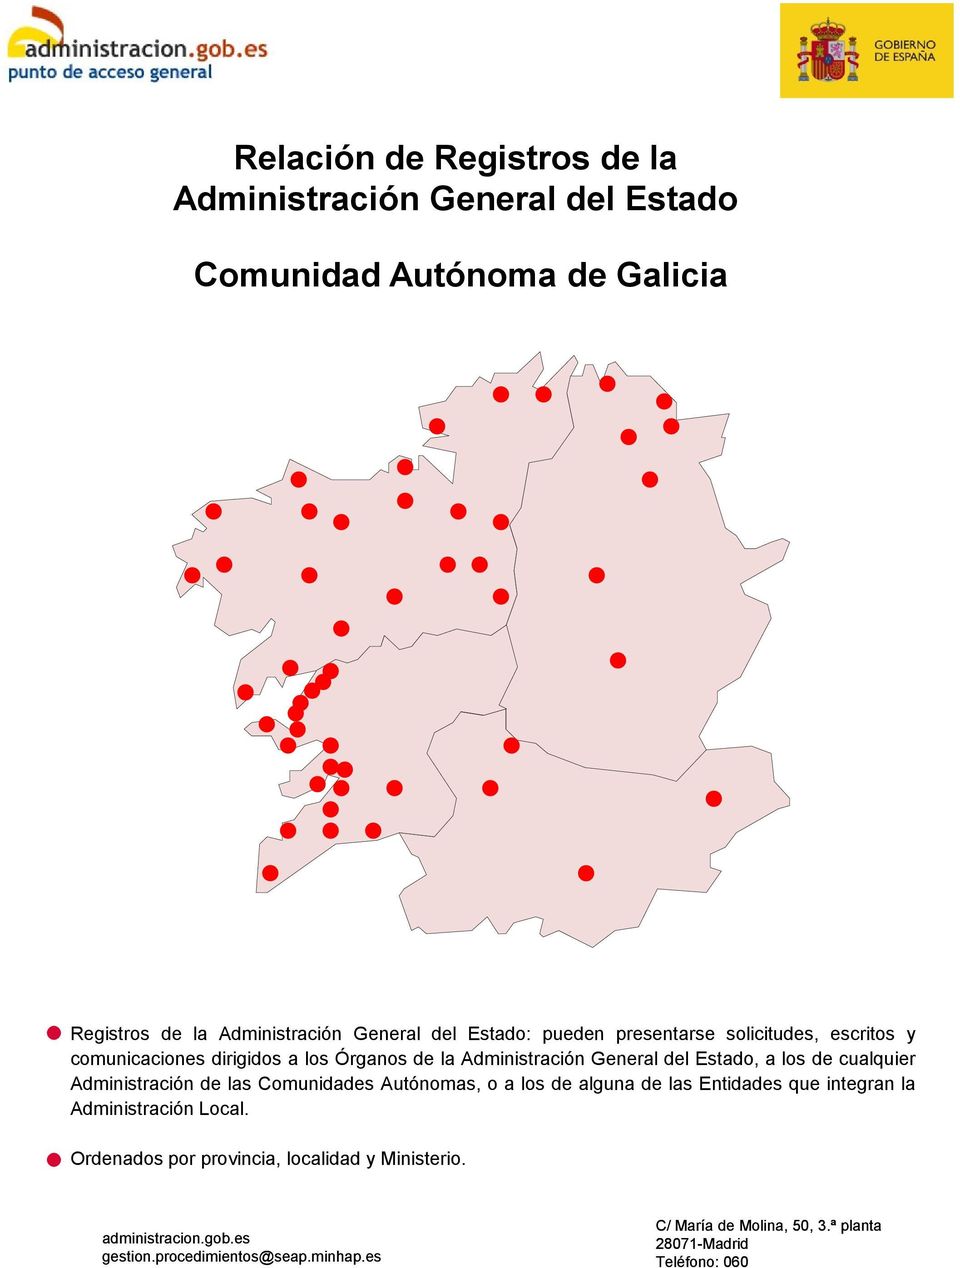 Administración de las Comunidades Autónomas, o a los de alguna de las Entidades que integran la Administración Local.